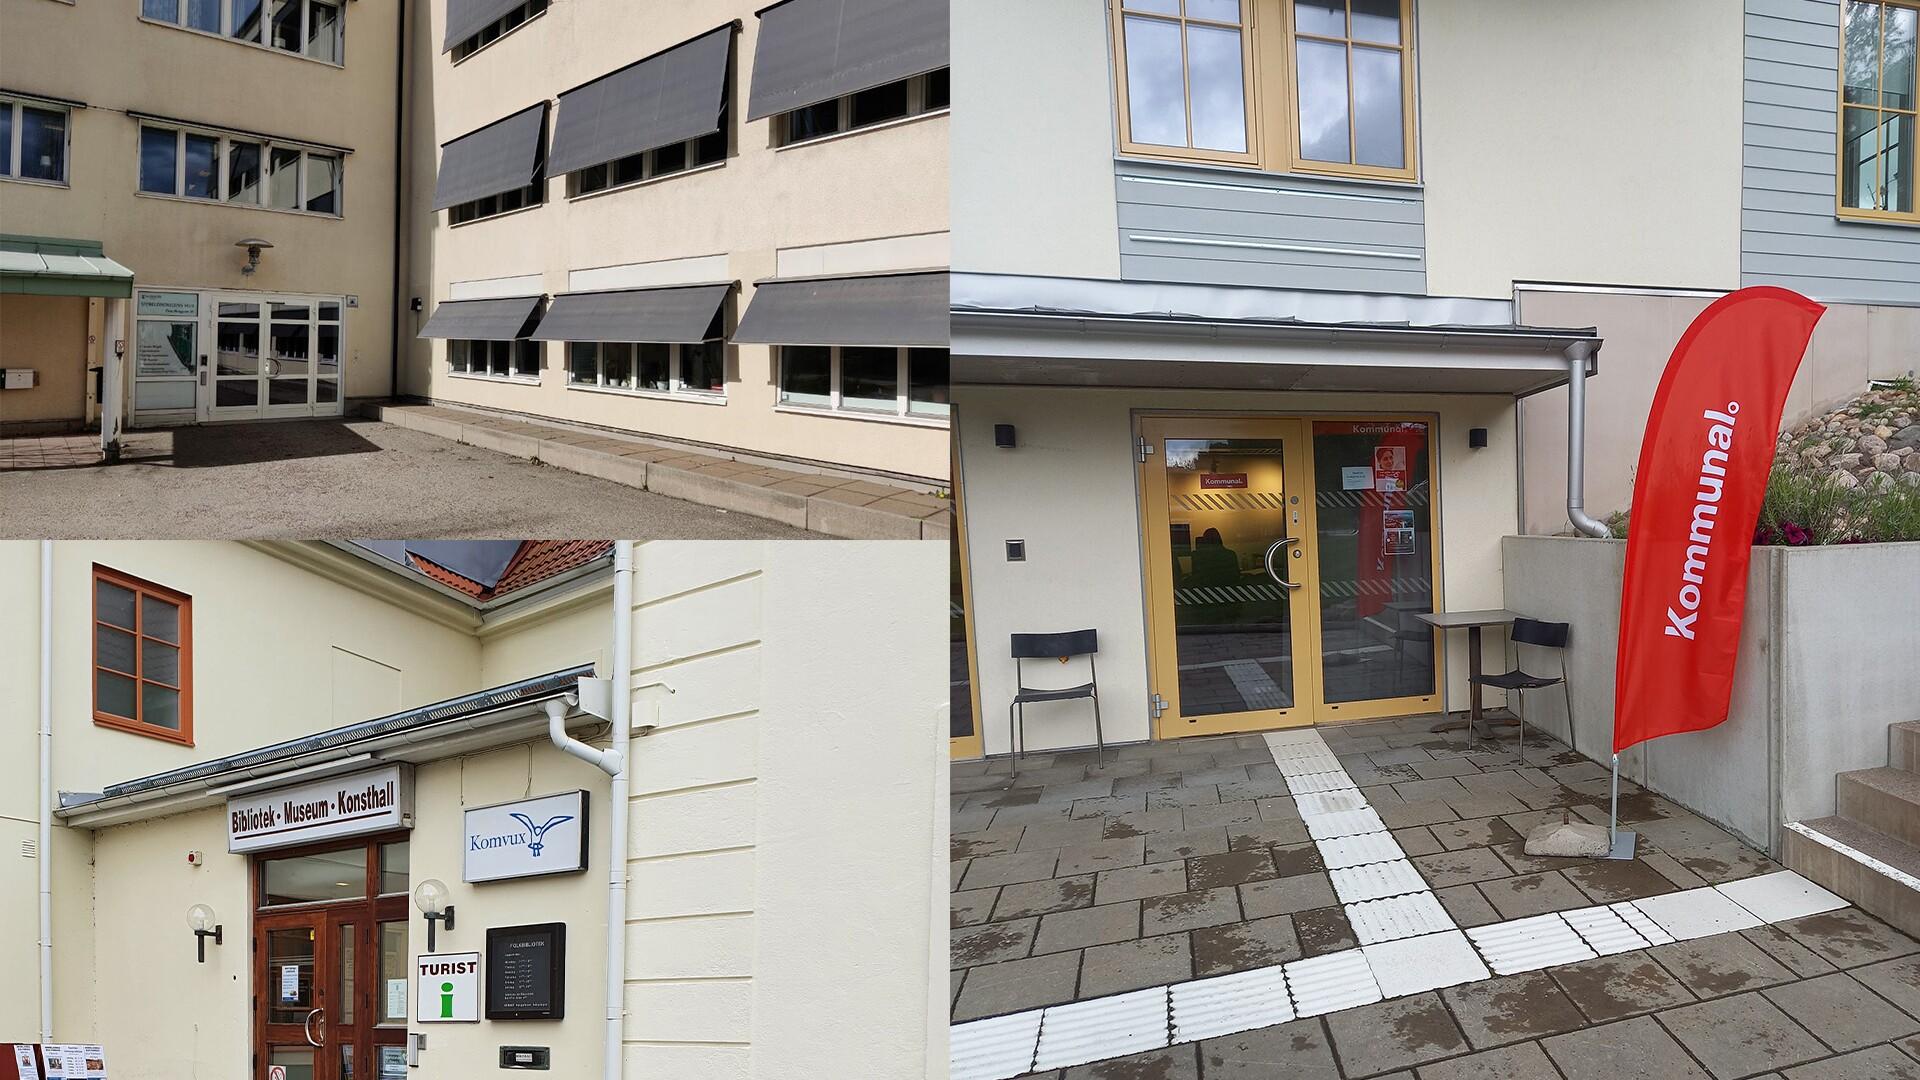 Uppe till vänster kontoret i Alingsås, nere till vänster kontoret i Herrljunga och till höger i bild kontoret i Vårgårda.